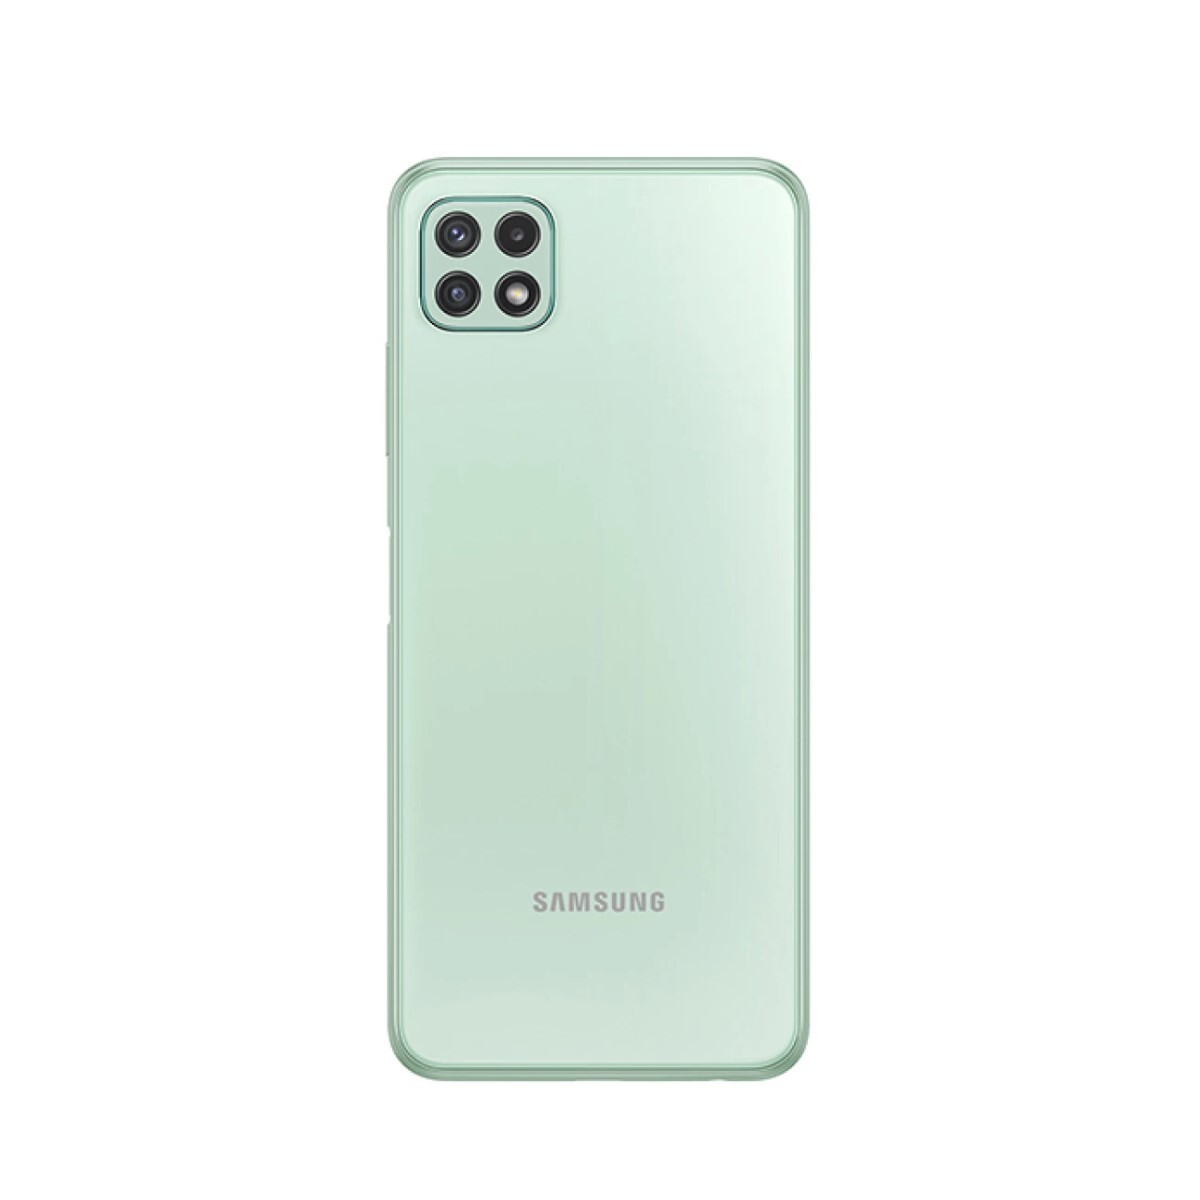 Samsung galaxy a22 5g - 128gb/4gb - dual sim Mint